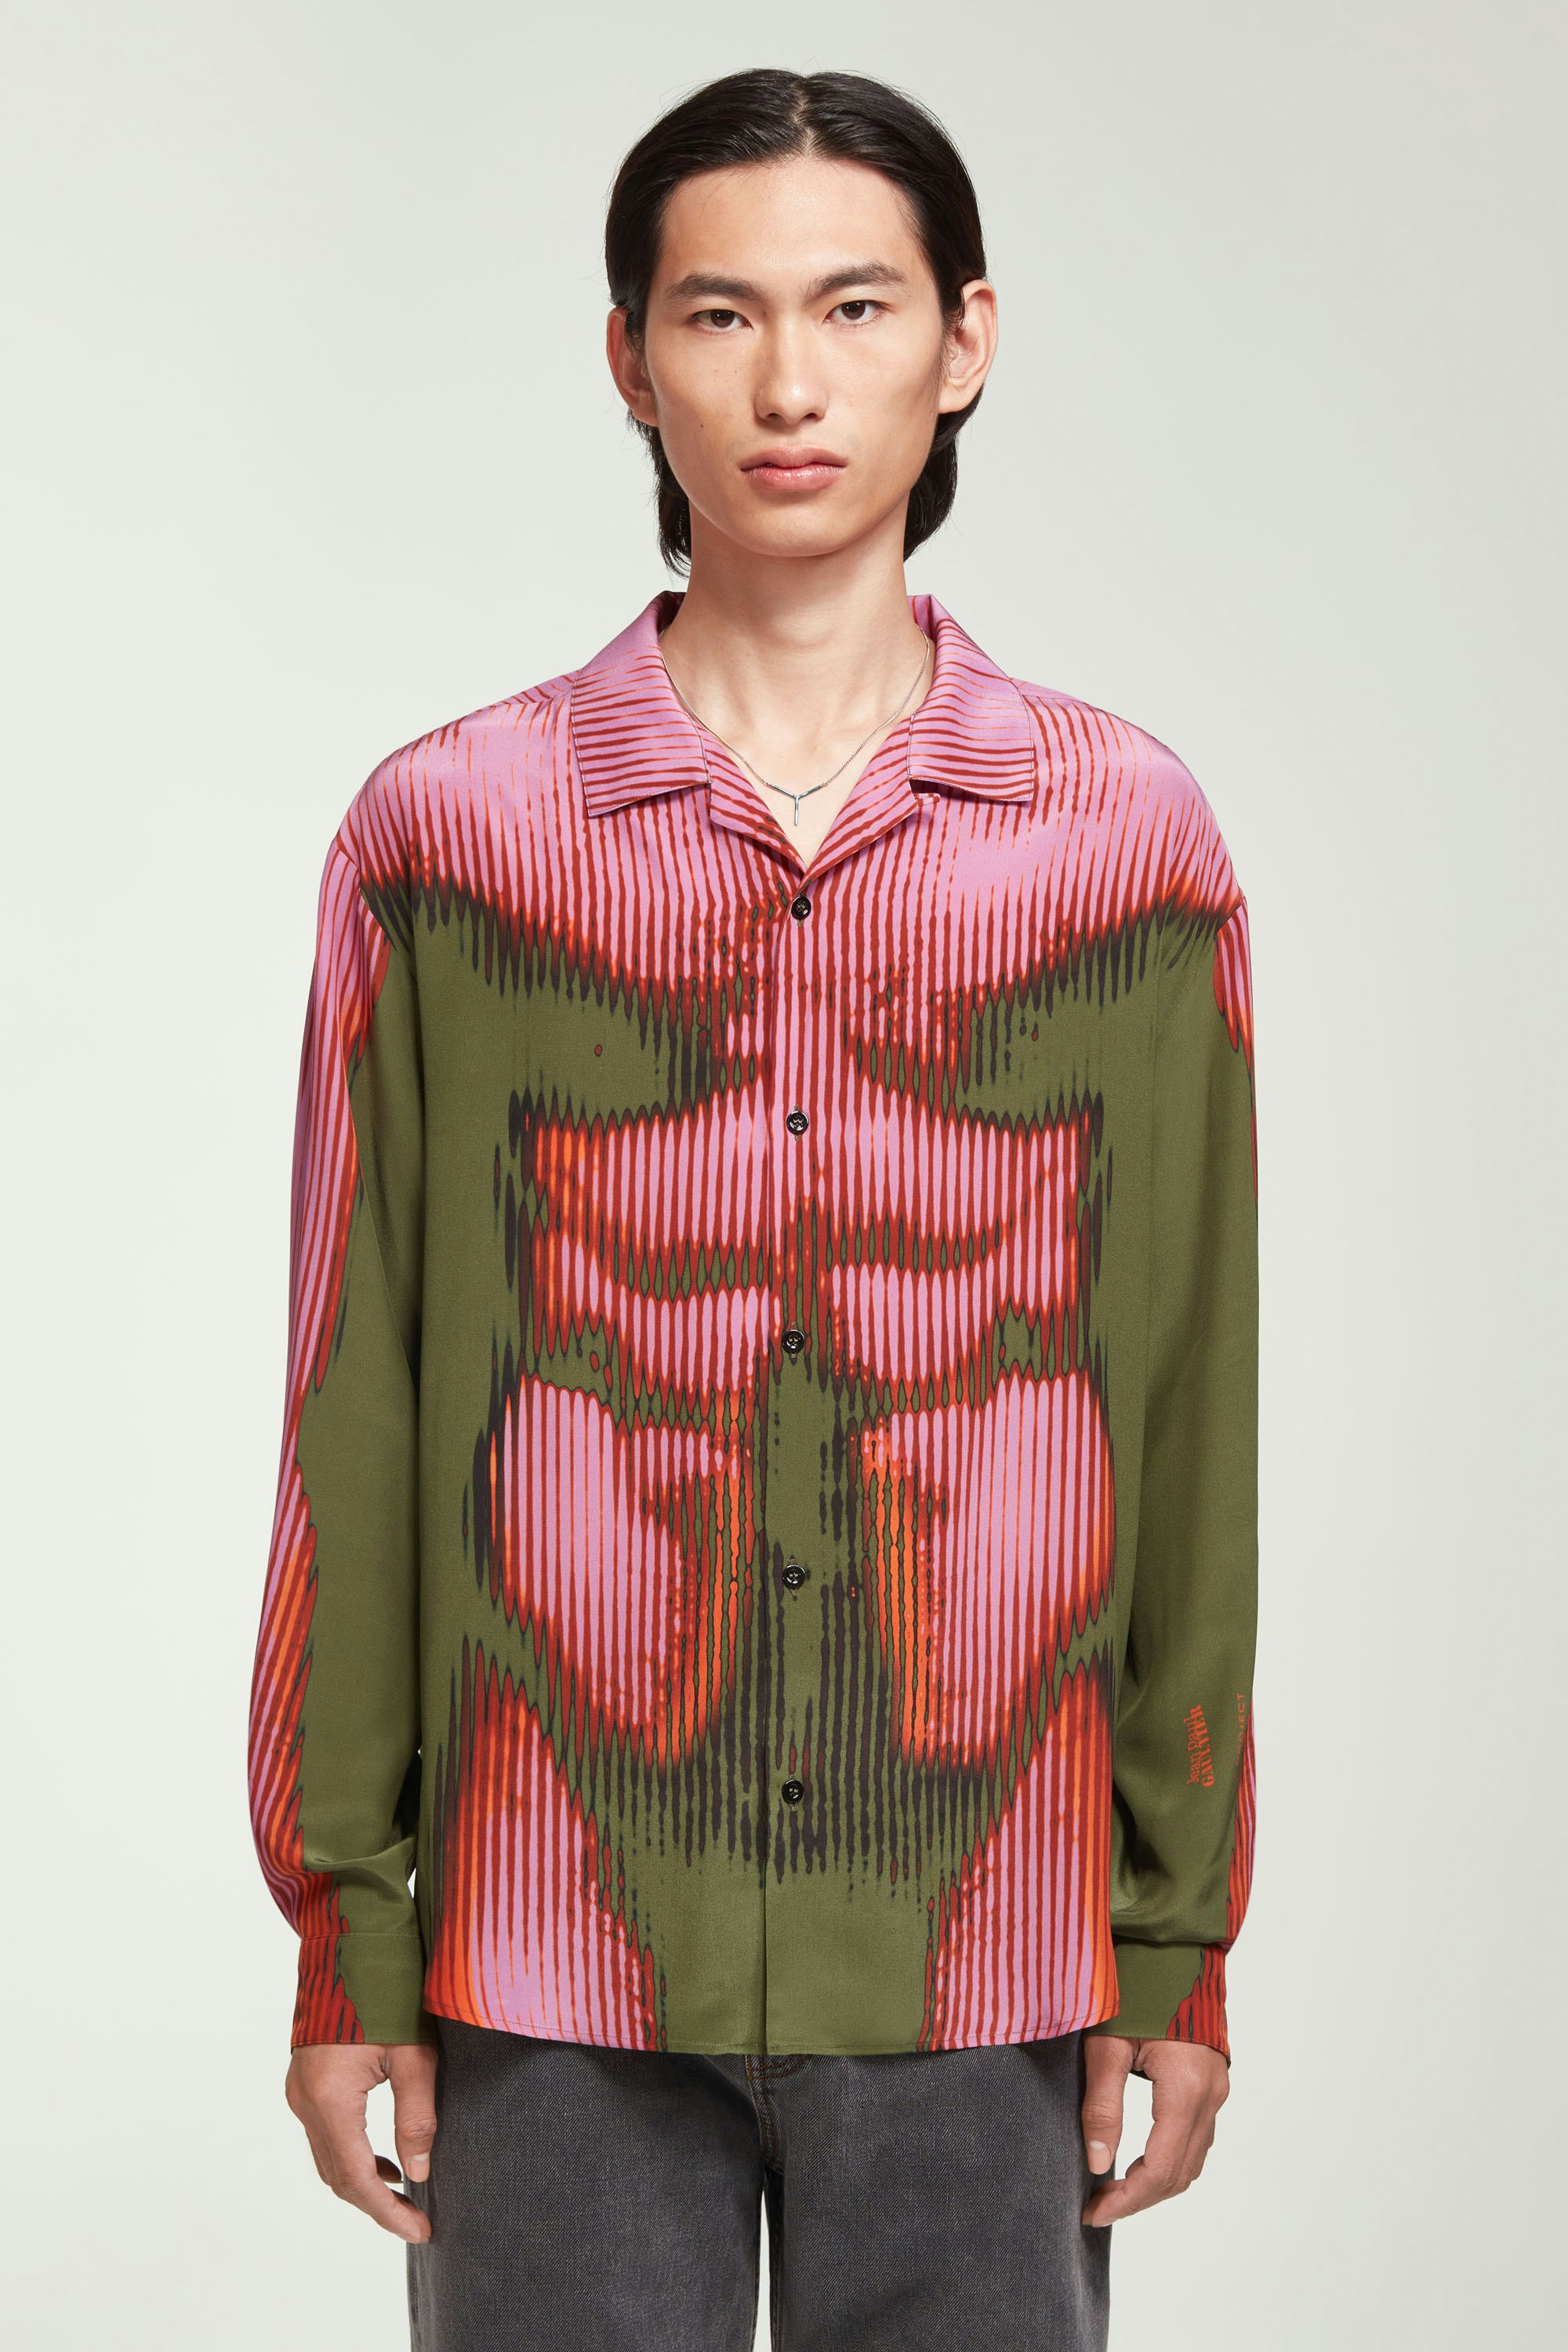 he Pink & Khaki Body Morph Pyjama Top by Jean Paul Gaultier x Y/Project